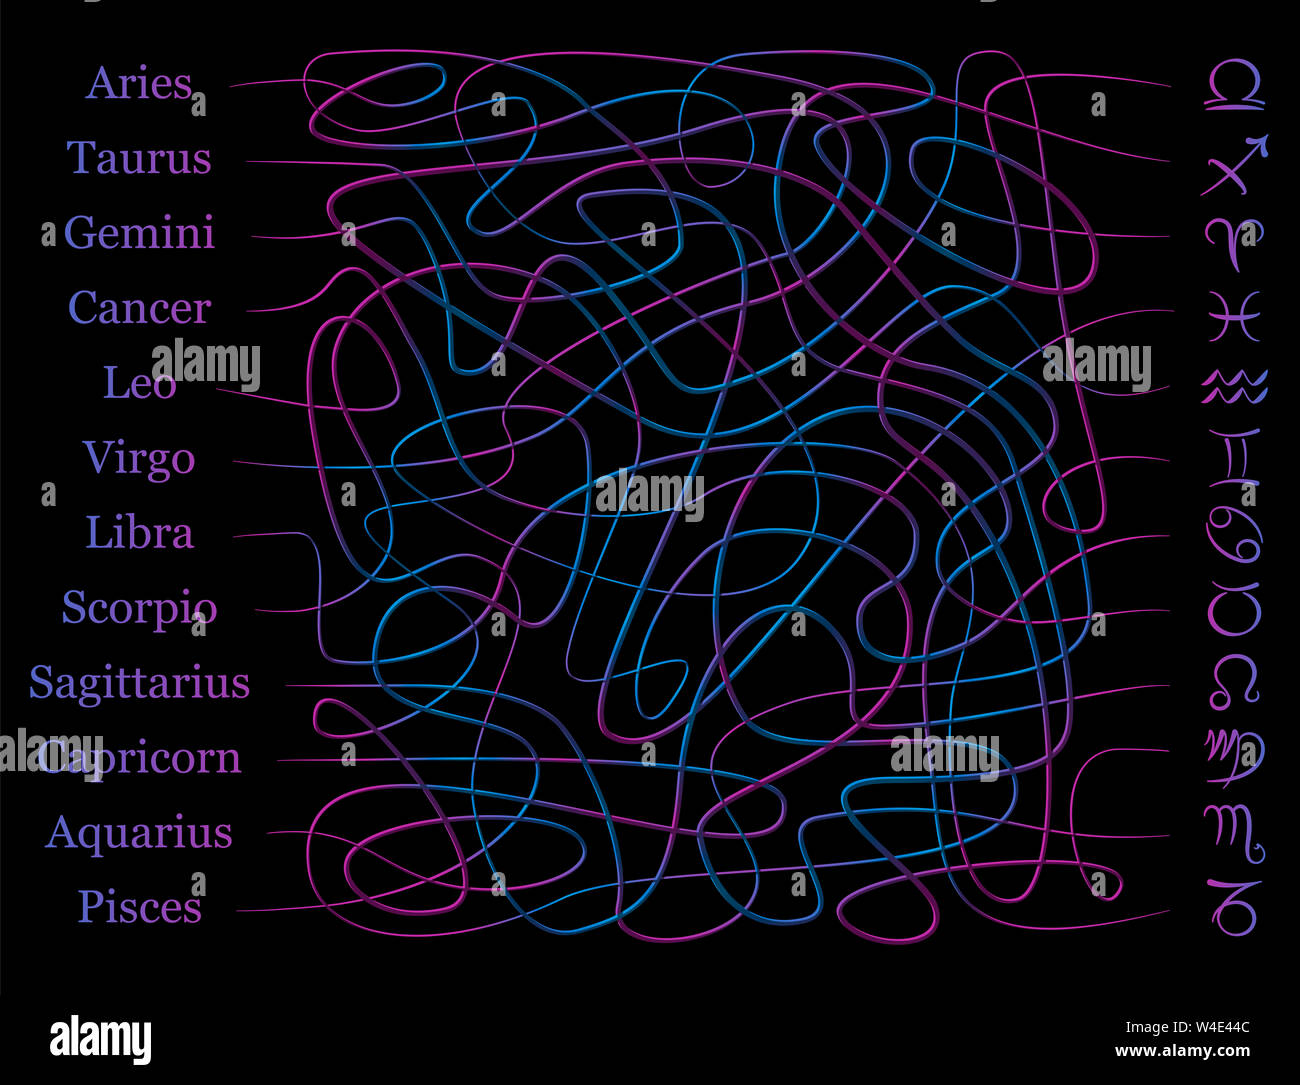 Astrologie Symbole Labyrinth. Zeichen des Tierkreises Labyrinth. Finden Sie den richtigen Weg der verworrenen mystischen Zeilen die Namen mit den Symbolen zu verbinden. Stockfoto